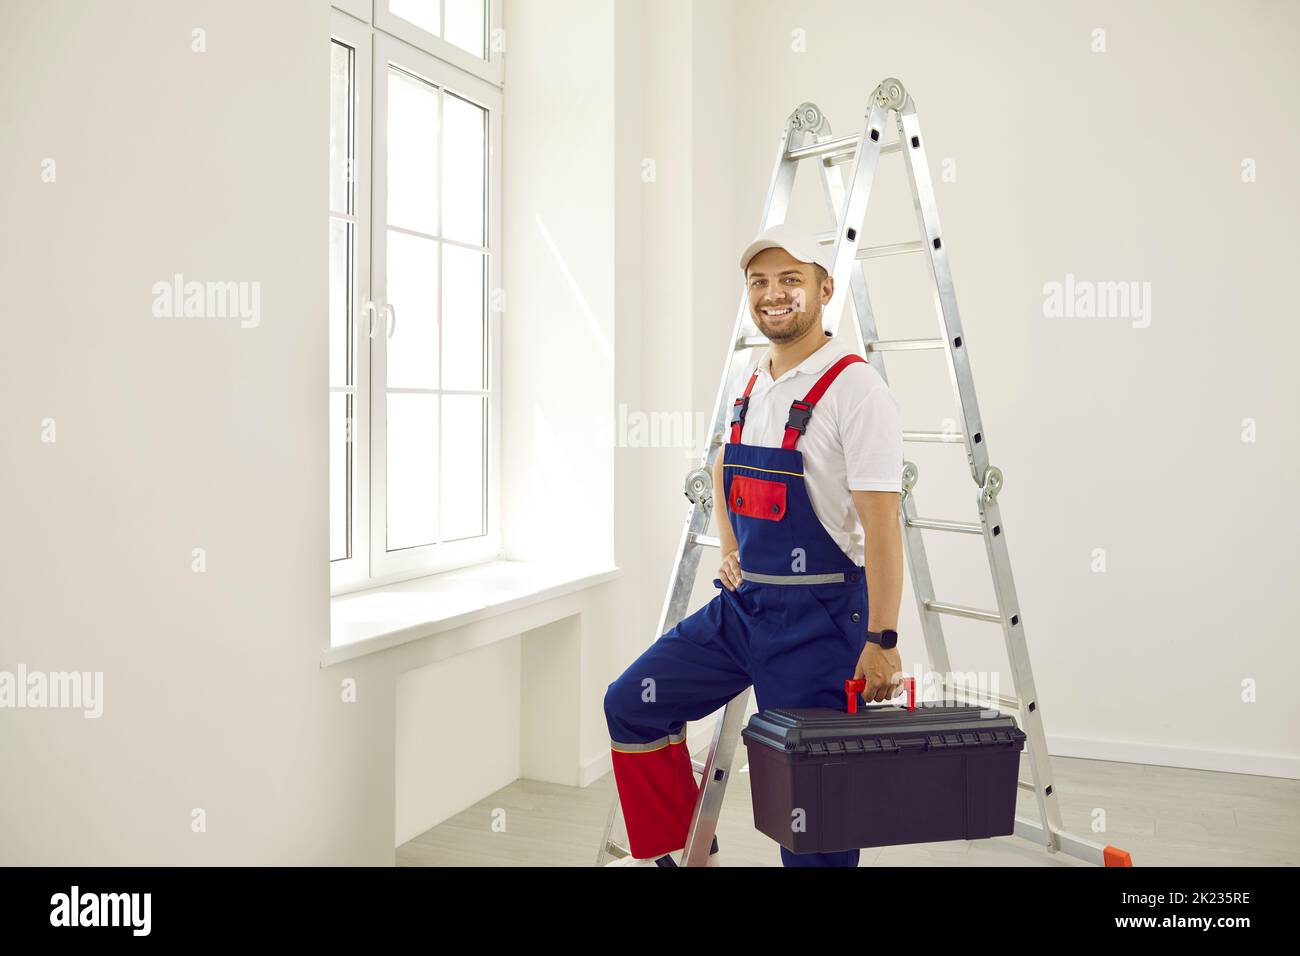 Lavoratore maschio felice in uniforme in piedi in stanza vuota, tenendo cassetta degli attrezzi e sorridendo Foto Stock